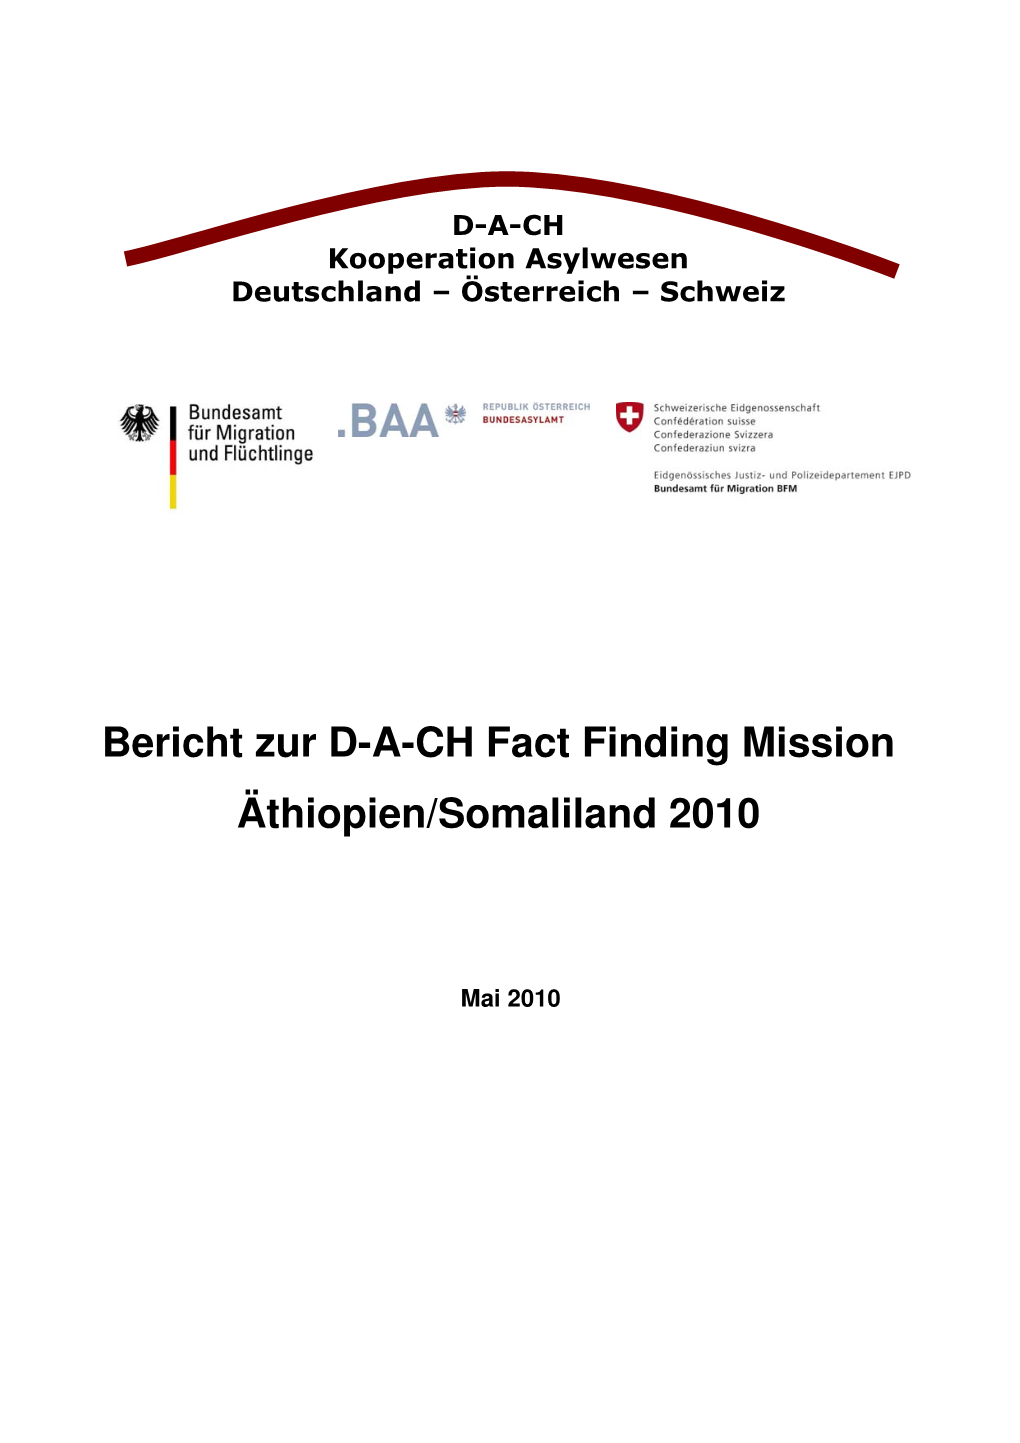 Bericht Zur D-A-CH Fact Finding Mission Äthiopien/Somaliland 2010